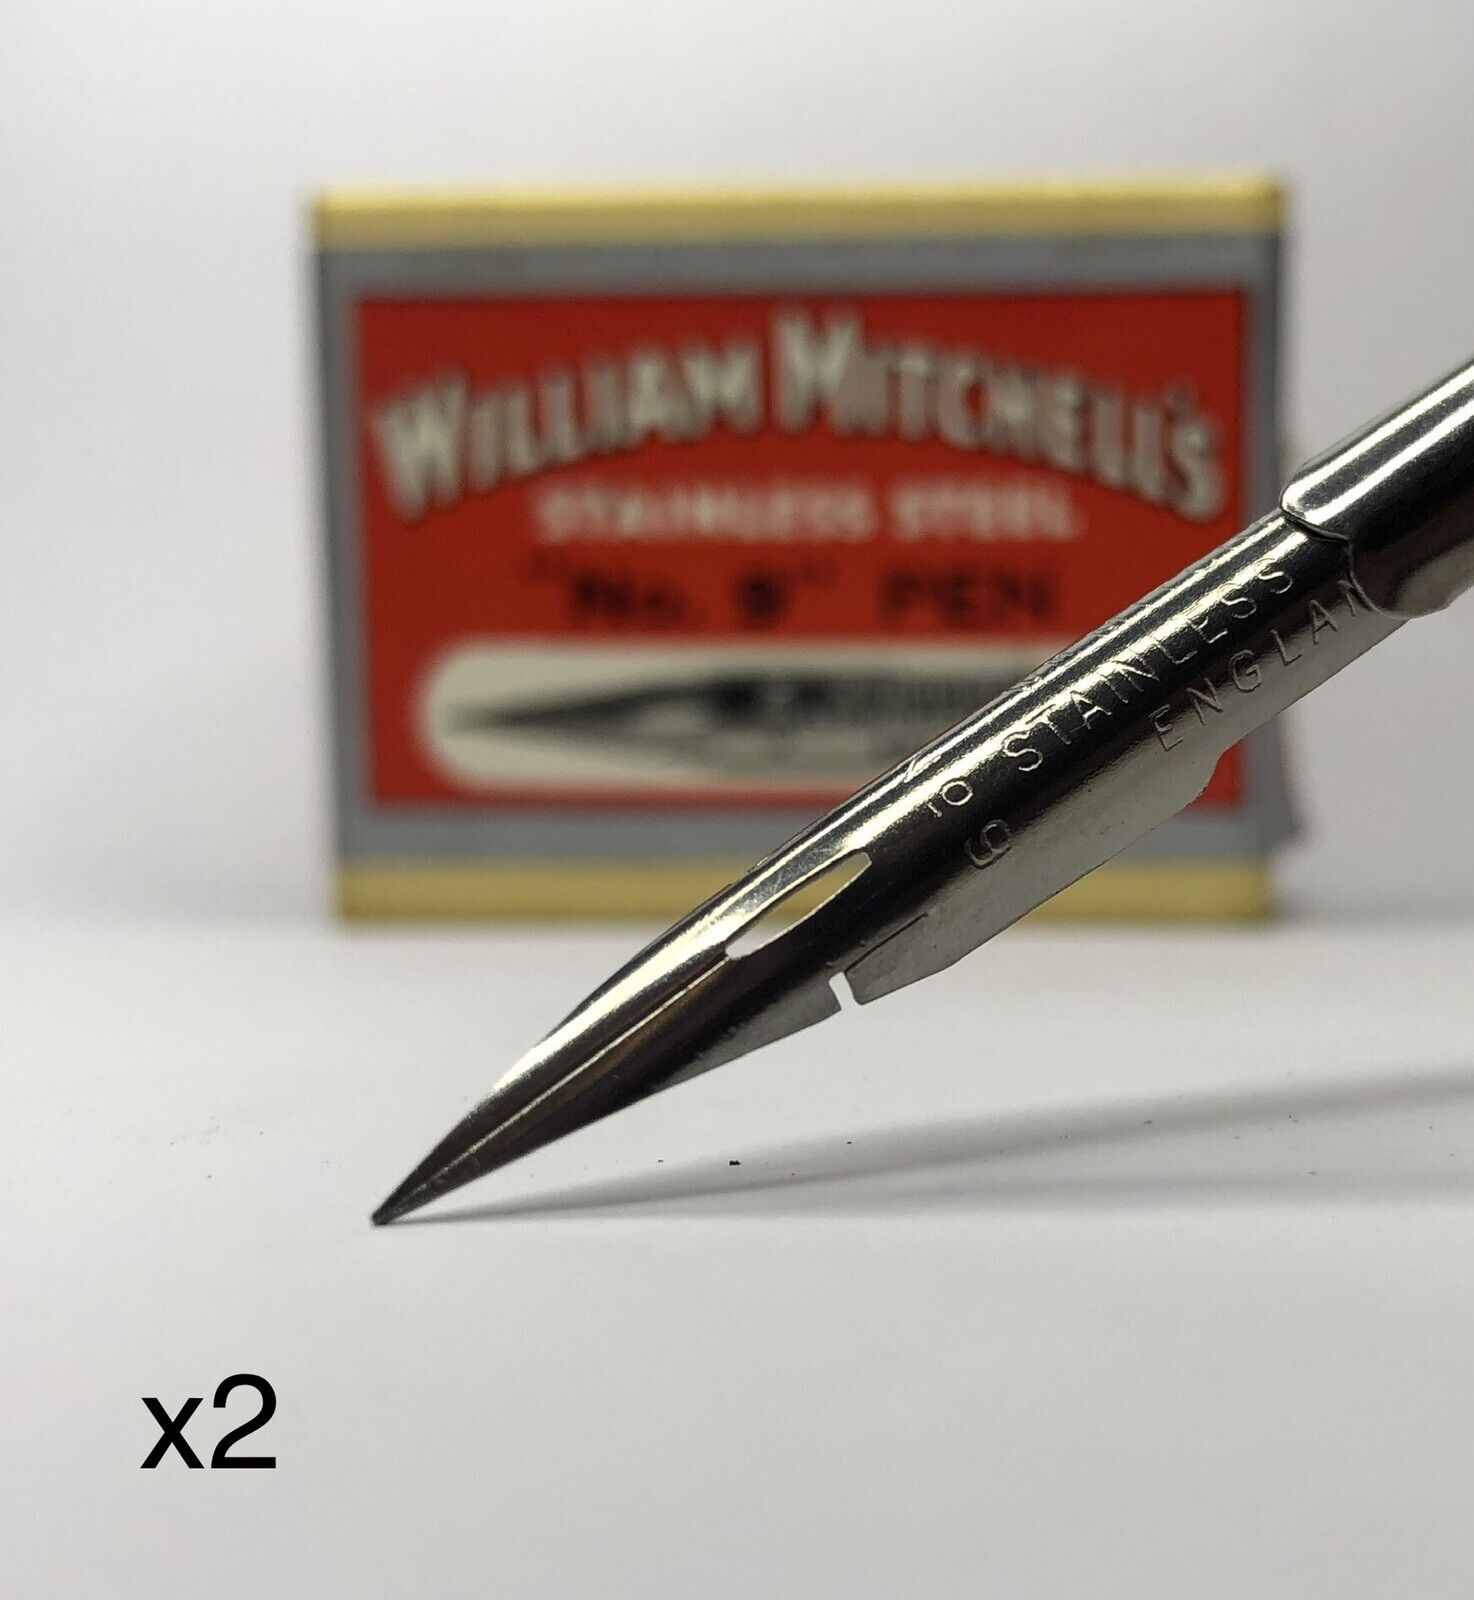 x2 William Mitchell's Stainless Steel "No.9" Pen 0221 Fine Nib Vintage Dip Pen William Mitchell